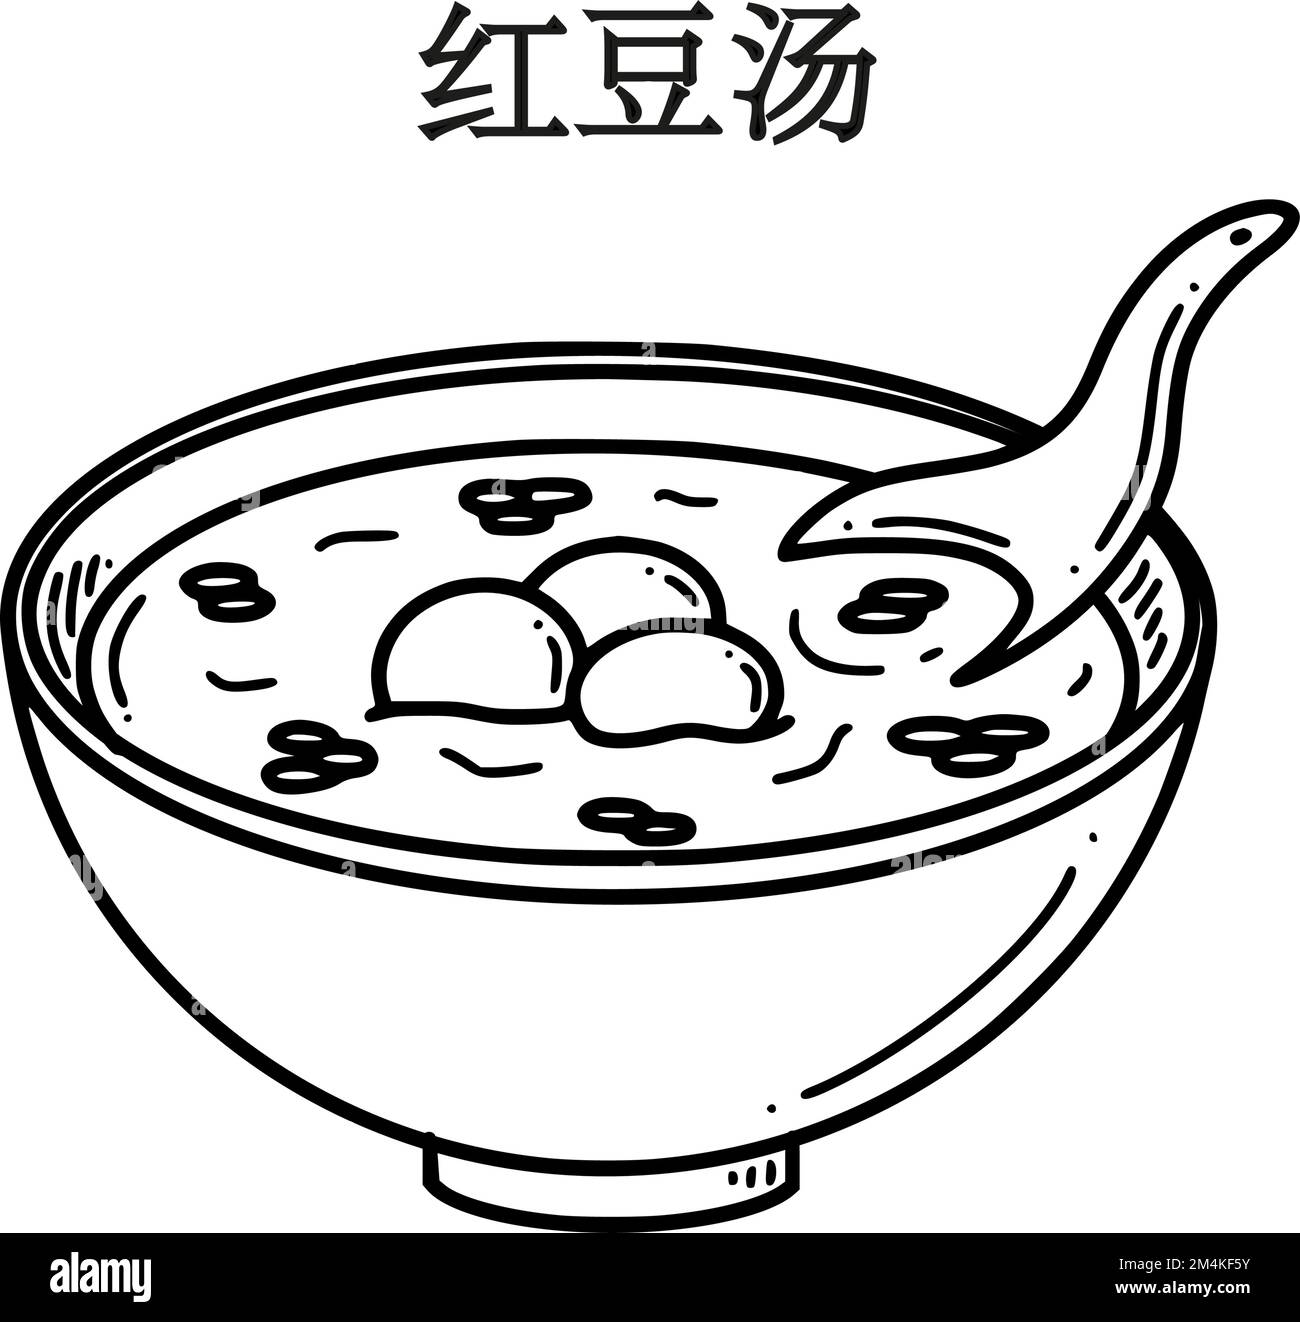 Hong dou Tang, traduction de la soupe chinoise aux haricots rouges. Illustration vectorielle de dessert du nouvel an chinois dans un style Doodle. Illustration de Vecteur